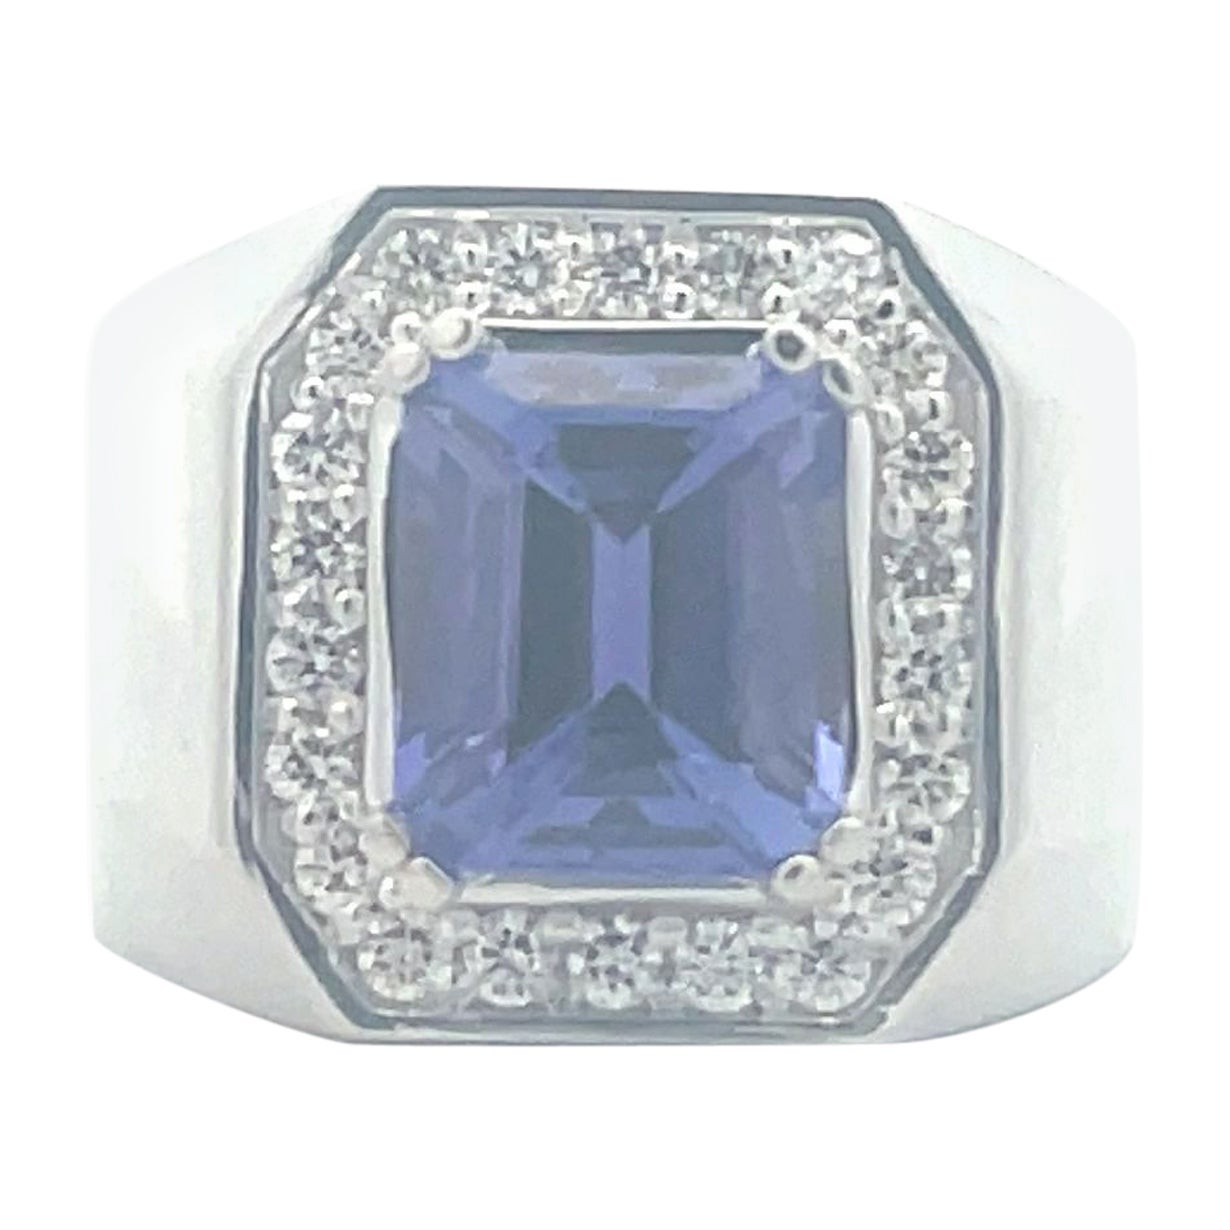 5.38 ct. Emerald Cut Tanzanite Diamond Halo Men's Ring in 14K White Gold